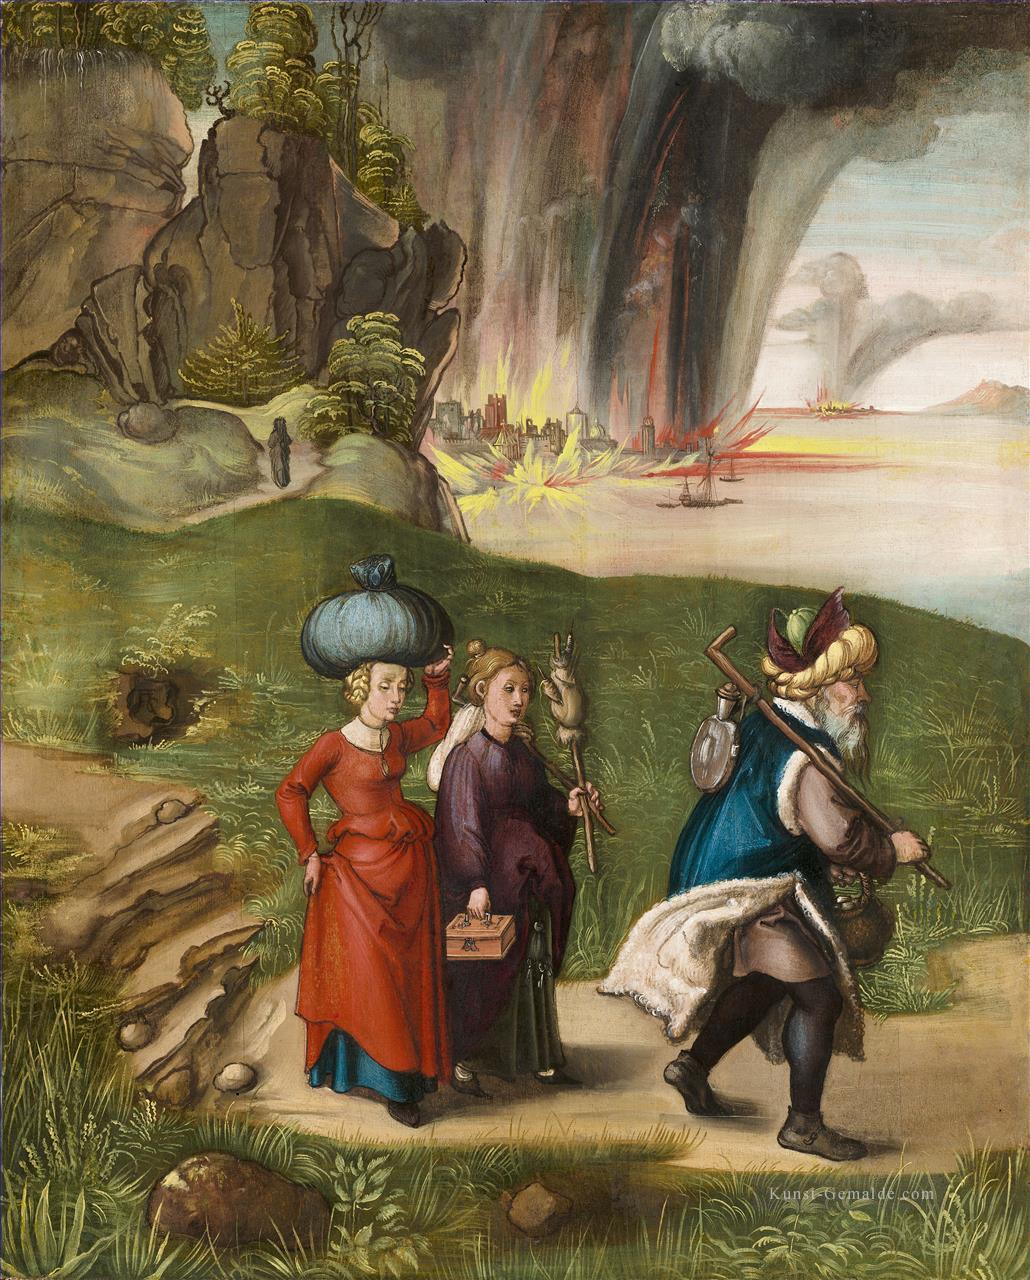 Lot Fliehen mit seinen Töchtern von Sodom Nothern Renaissance Albrecht Dürer Ölgemälde